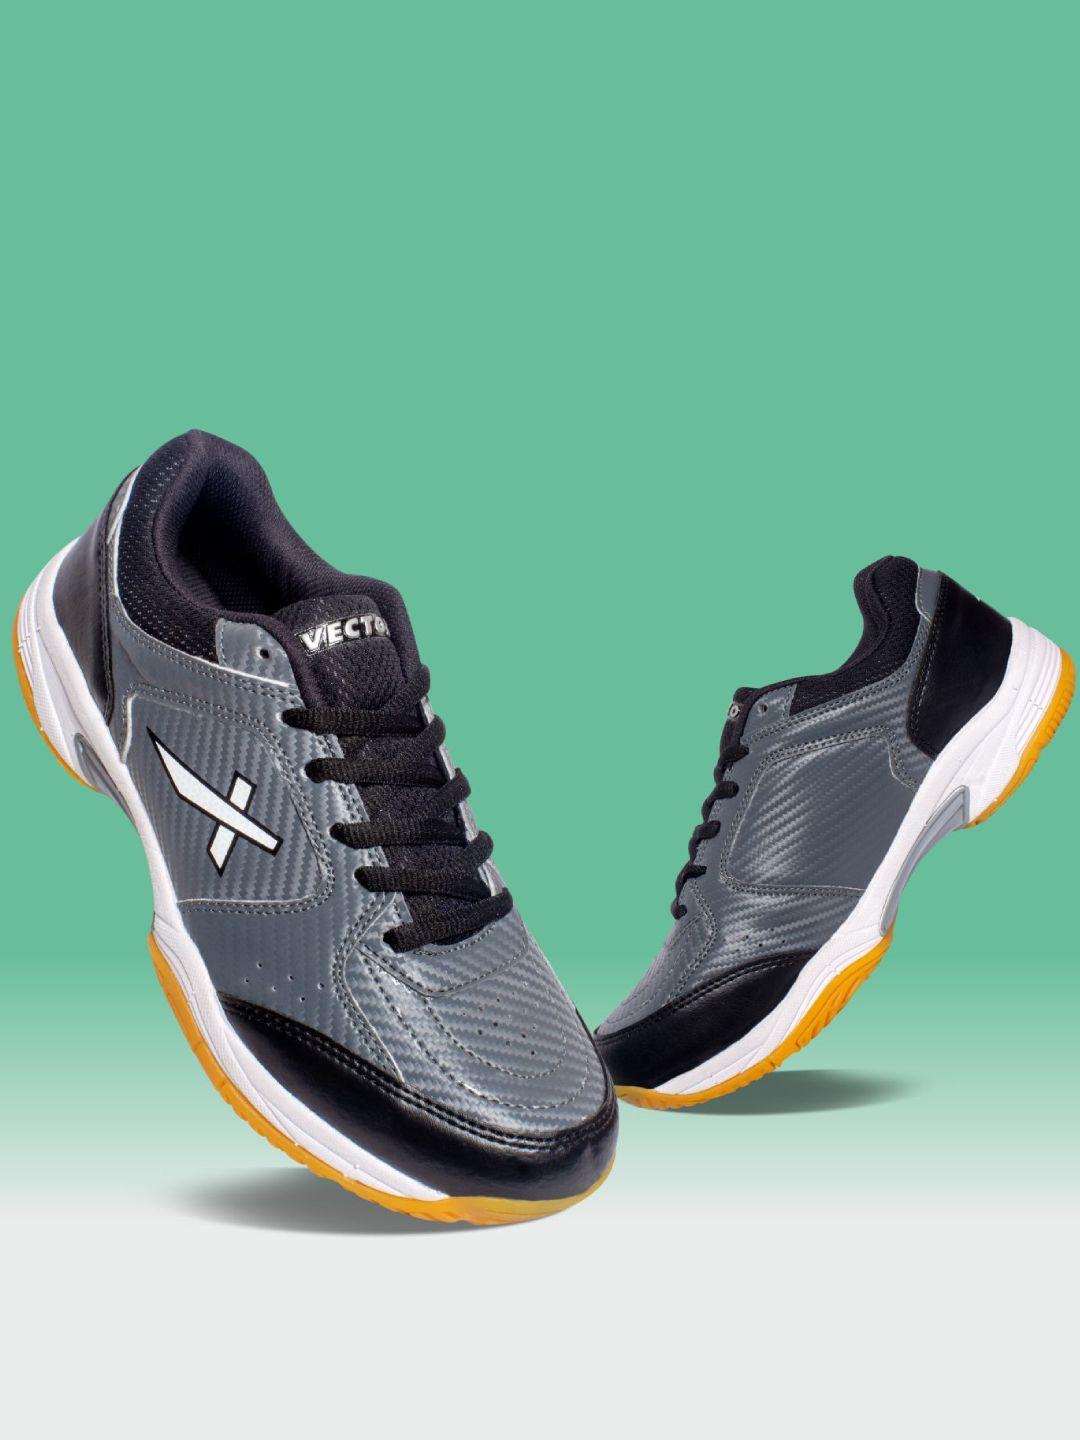 VECTOR X Drake Slip Resistance Non-Marking Badminton Shoes